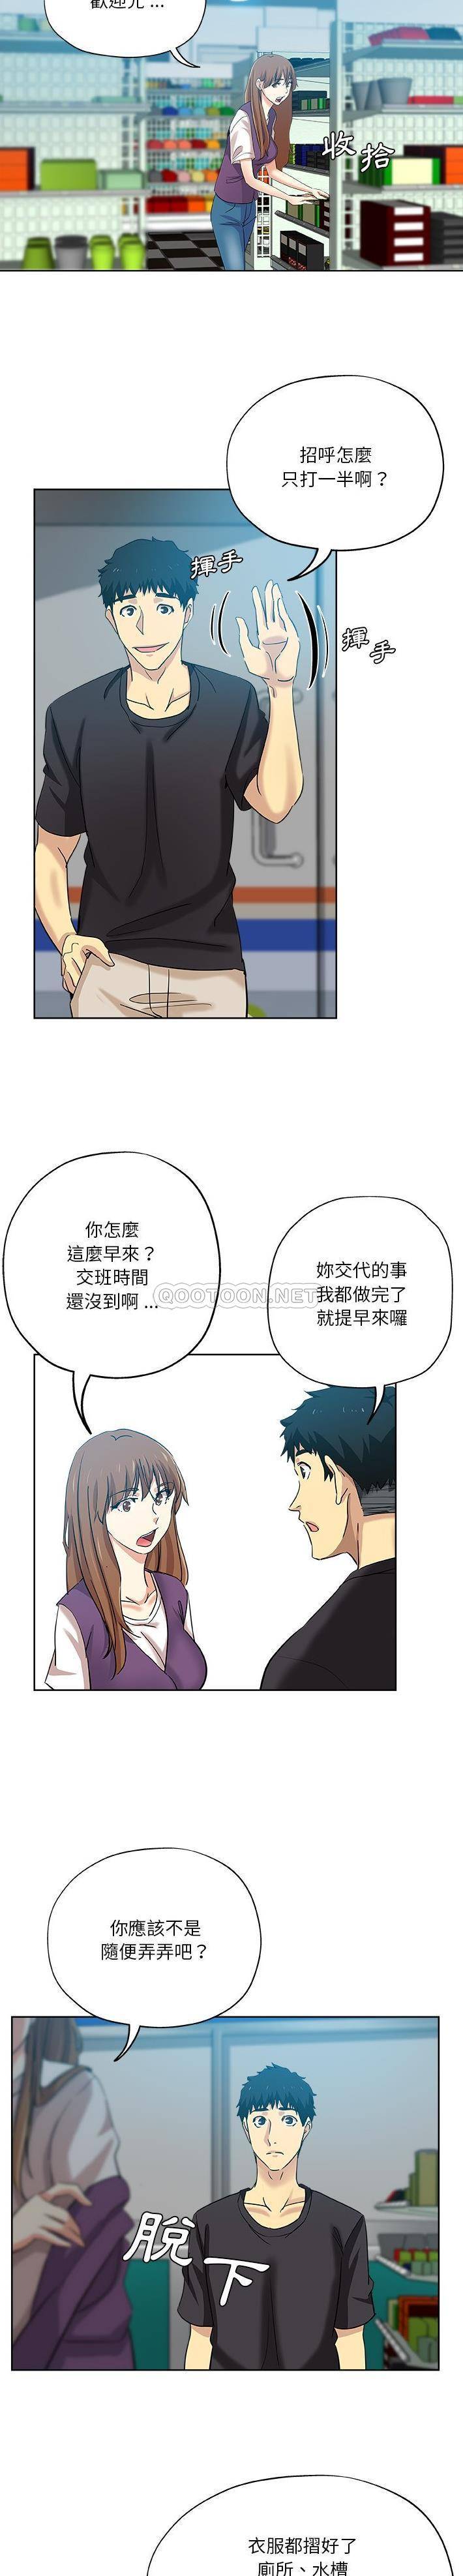 韩国污漫画 危險純友誼 第30话 13